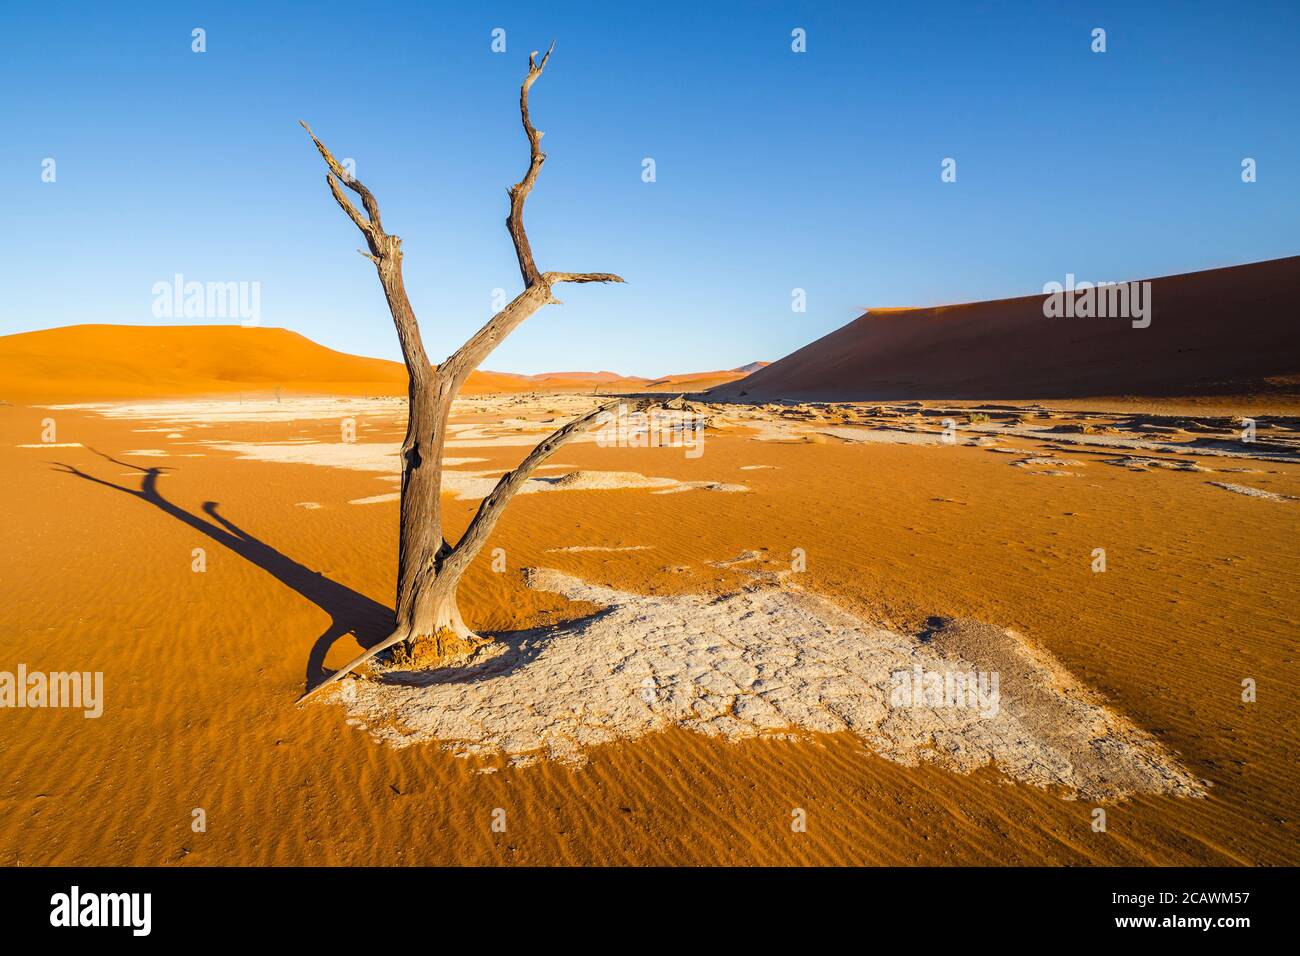 Les arbres de Deadvlei, ou Dead Vlei, une casserole en argile blanche située près de la plus célèbre casserole de sel de Sossusvlei, à l'intérieur du parc Namib-Naukluft en Namibie Banque D'Images